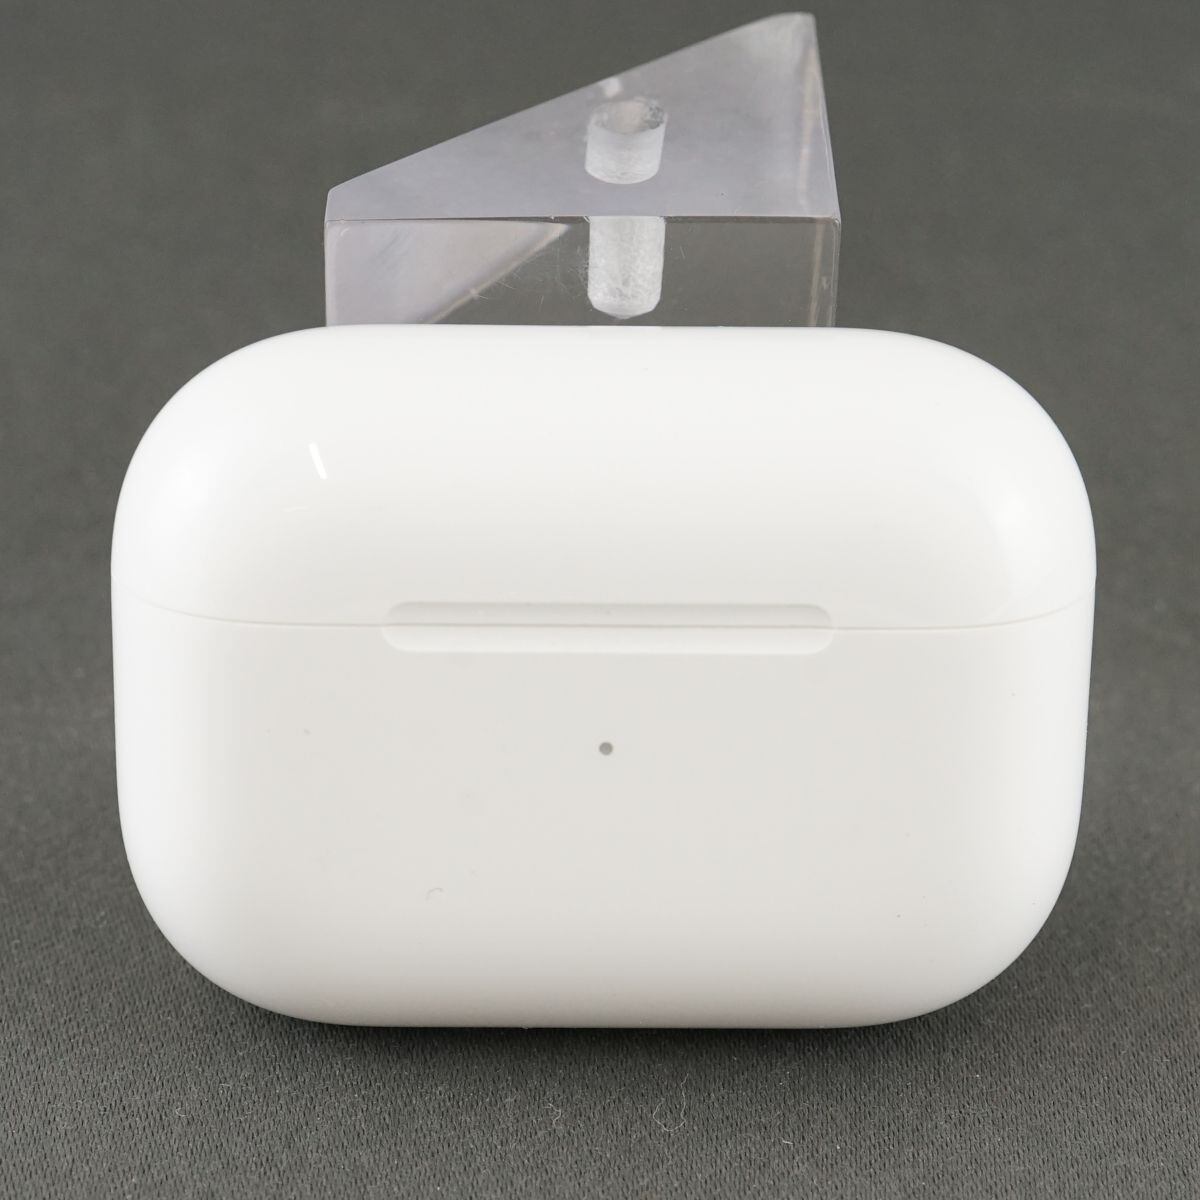 美品 Apple AirPods Pro エアーポッズ 充電ケースのみ商品状態